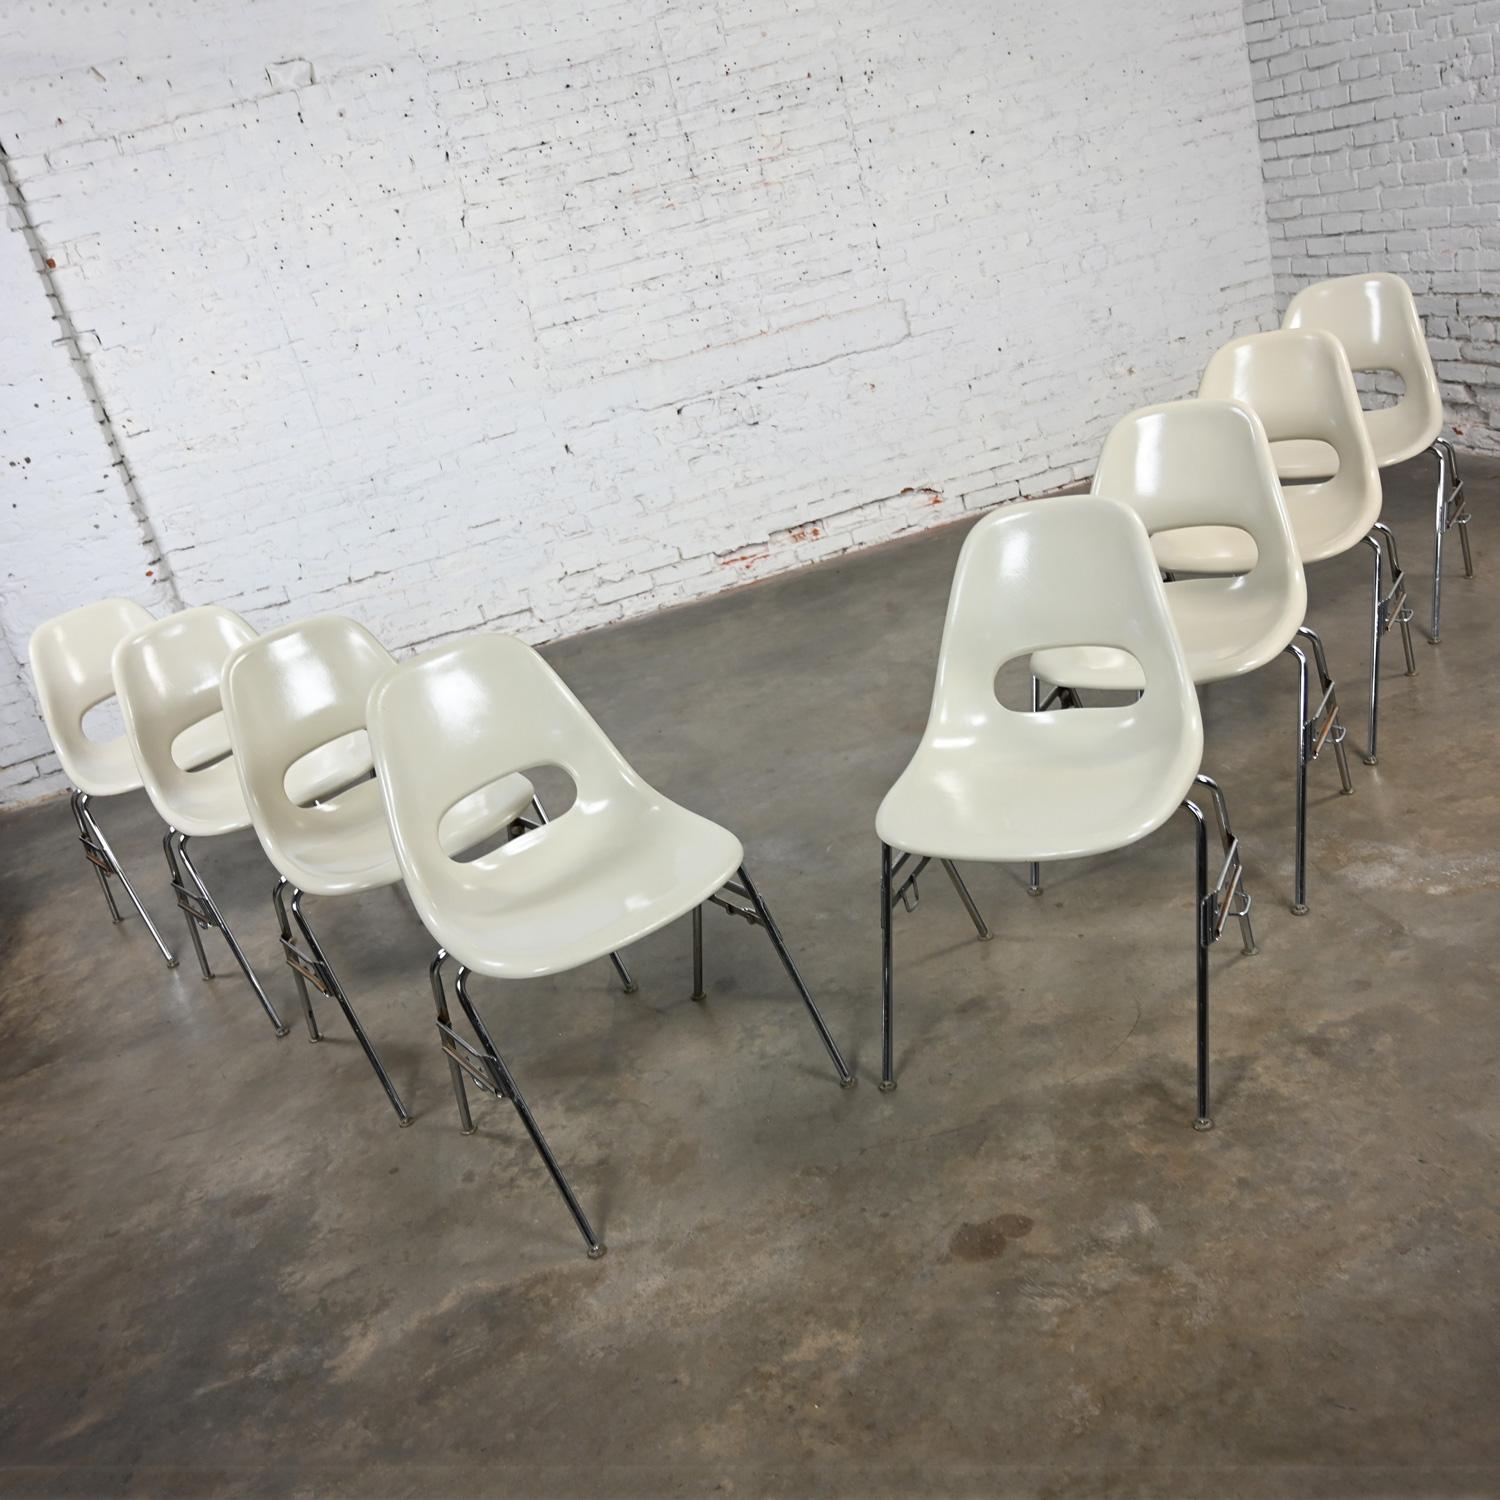 Superbe ensemble de 8 chaises empilables en fibre de verre blanc moulé et base tubulaire chromée, Krueger International Mid-Century Modern. Très bon état, en gardant à l'esprit qu'il s'agit d'un produit vintage et non neuf, qui présentera donc des